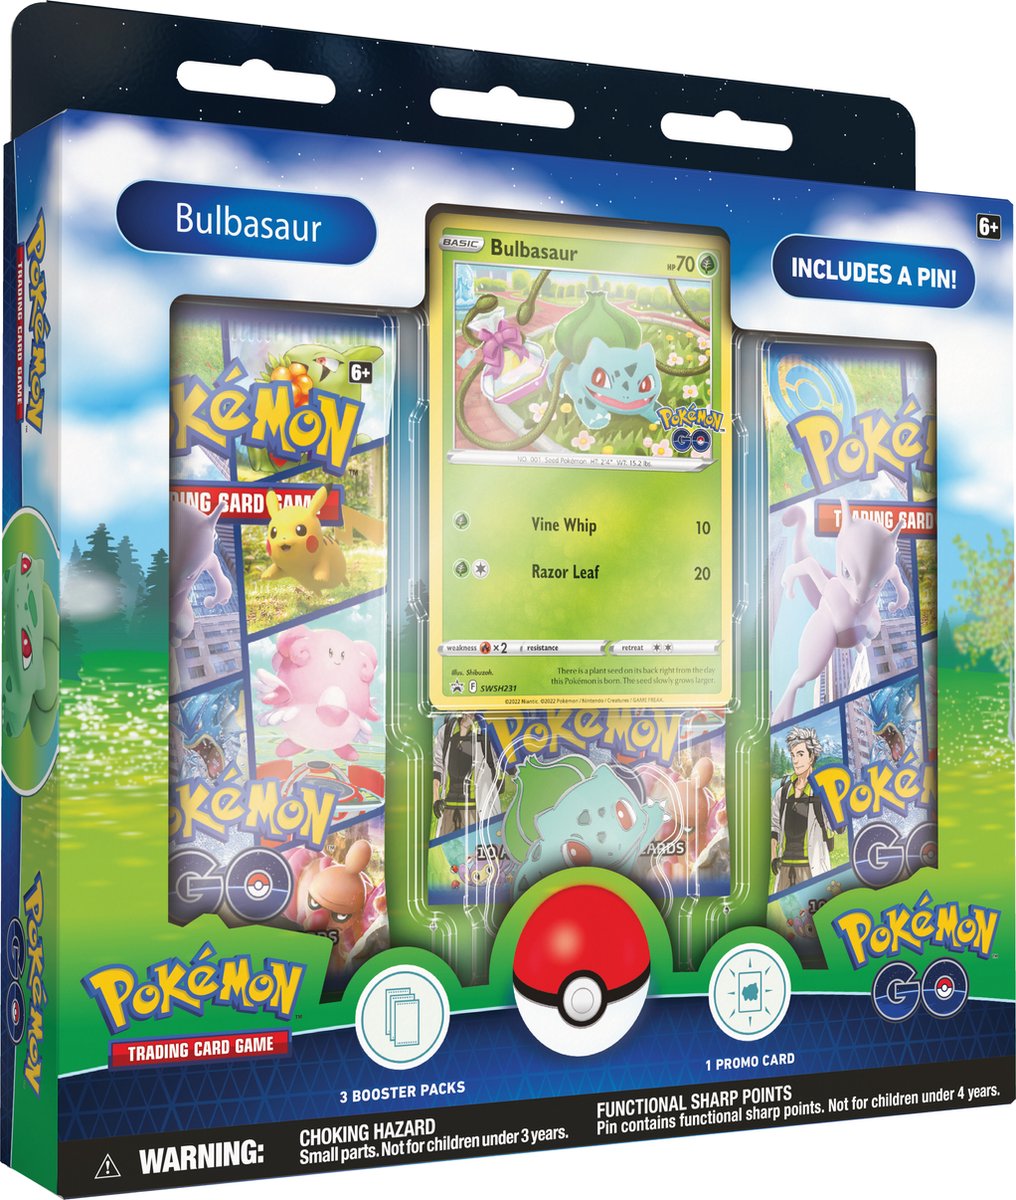 Pokémon Go Bulbasaur Pin Box